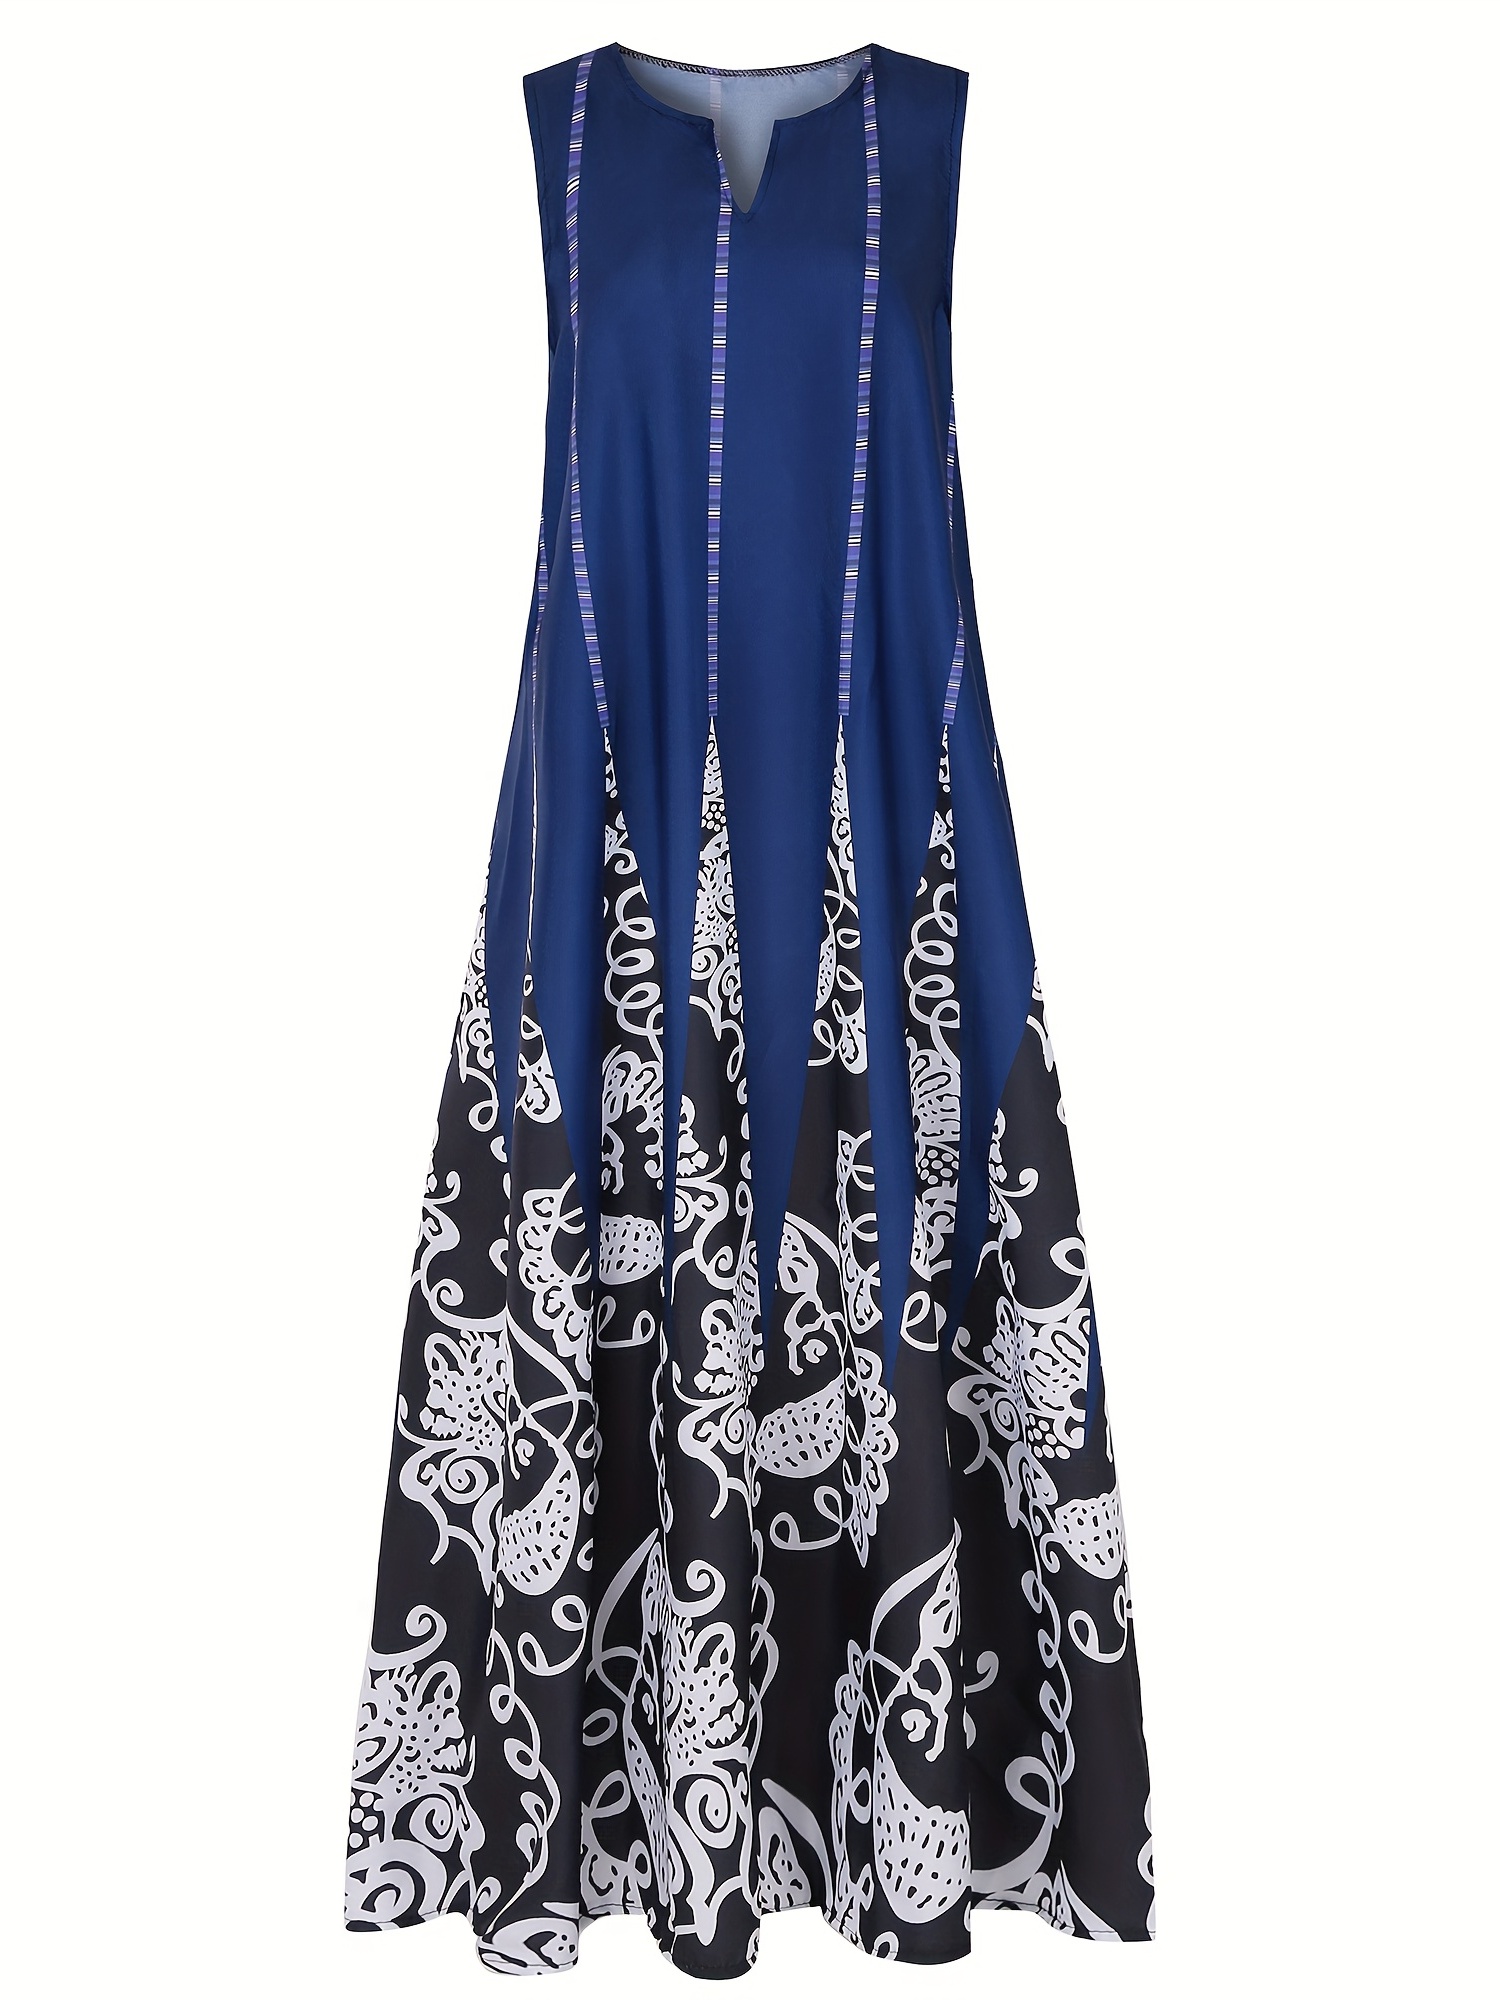 Φόρεμα με λουλούδια με λαιμόκοψη σε V, Vintage αμάνικο φόρεμα διπλής τσέπης, γυναικεία ρούχα